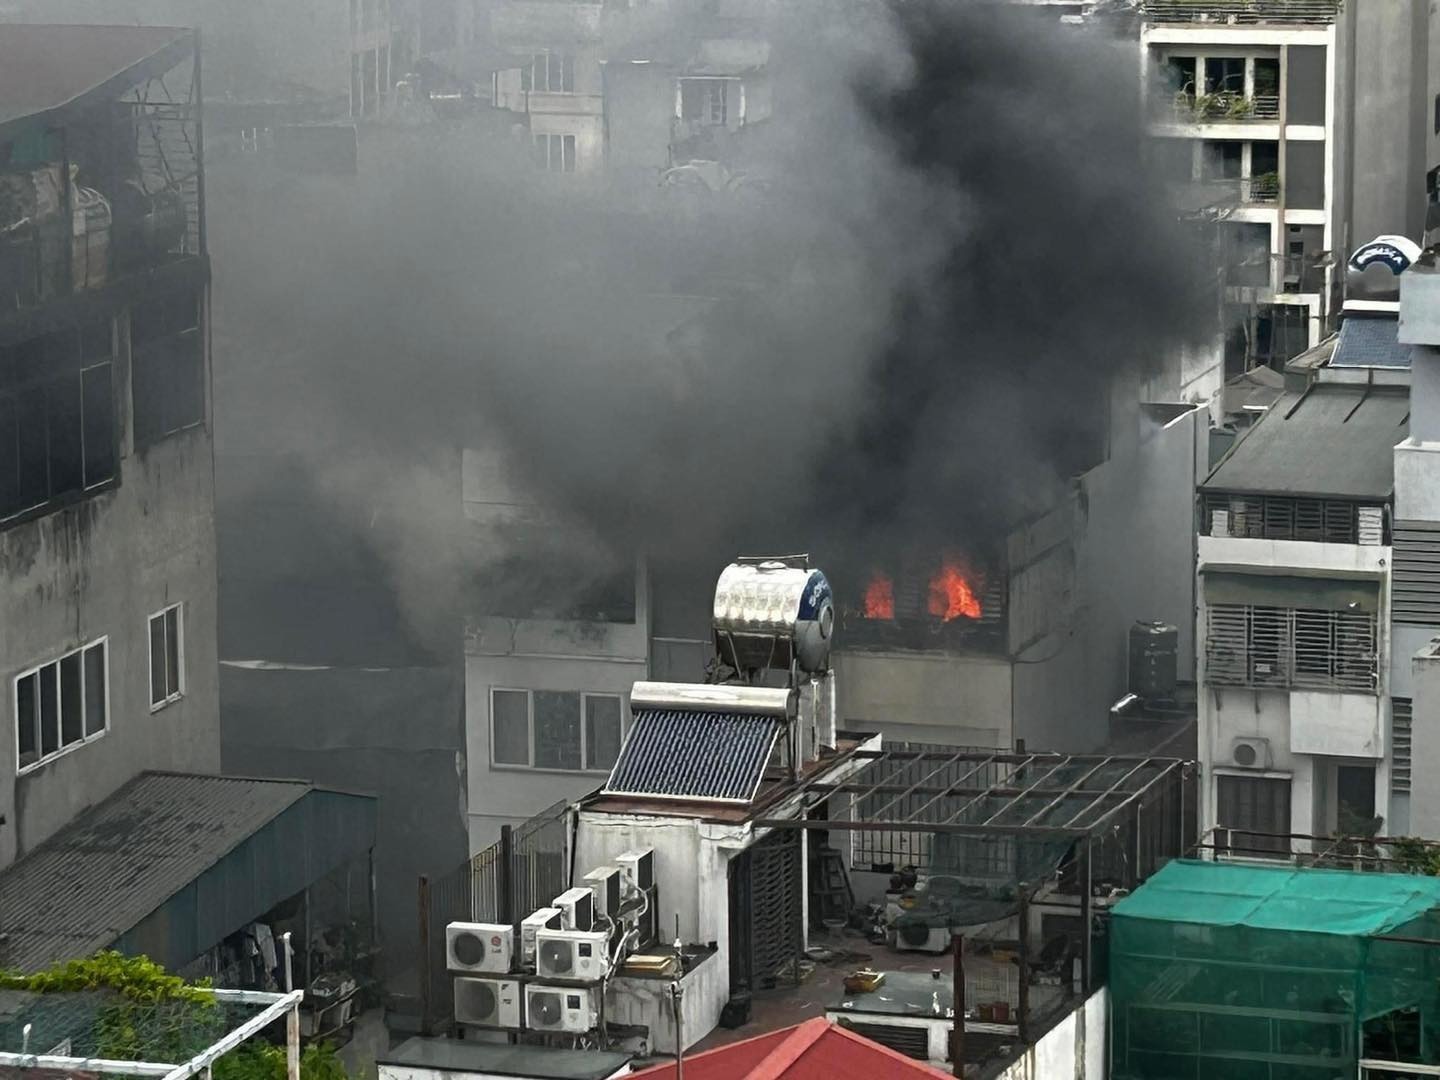 Cháy tầng 6 căn nhà ở Hà Nội, khói đen cuồn cuộn bốc cao khiến cả khu phố tháo chạy - ảnh 2